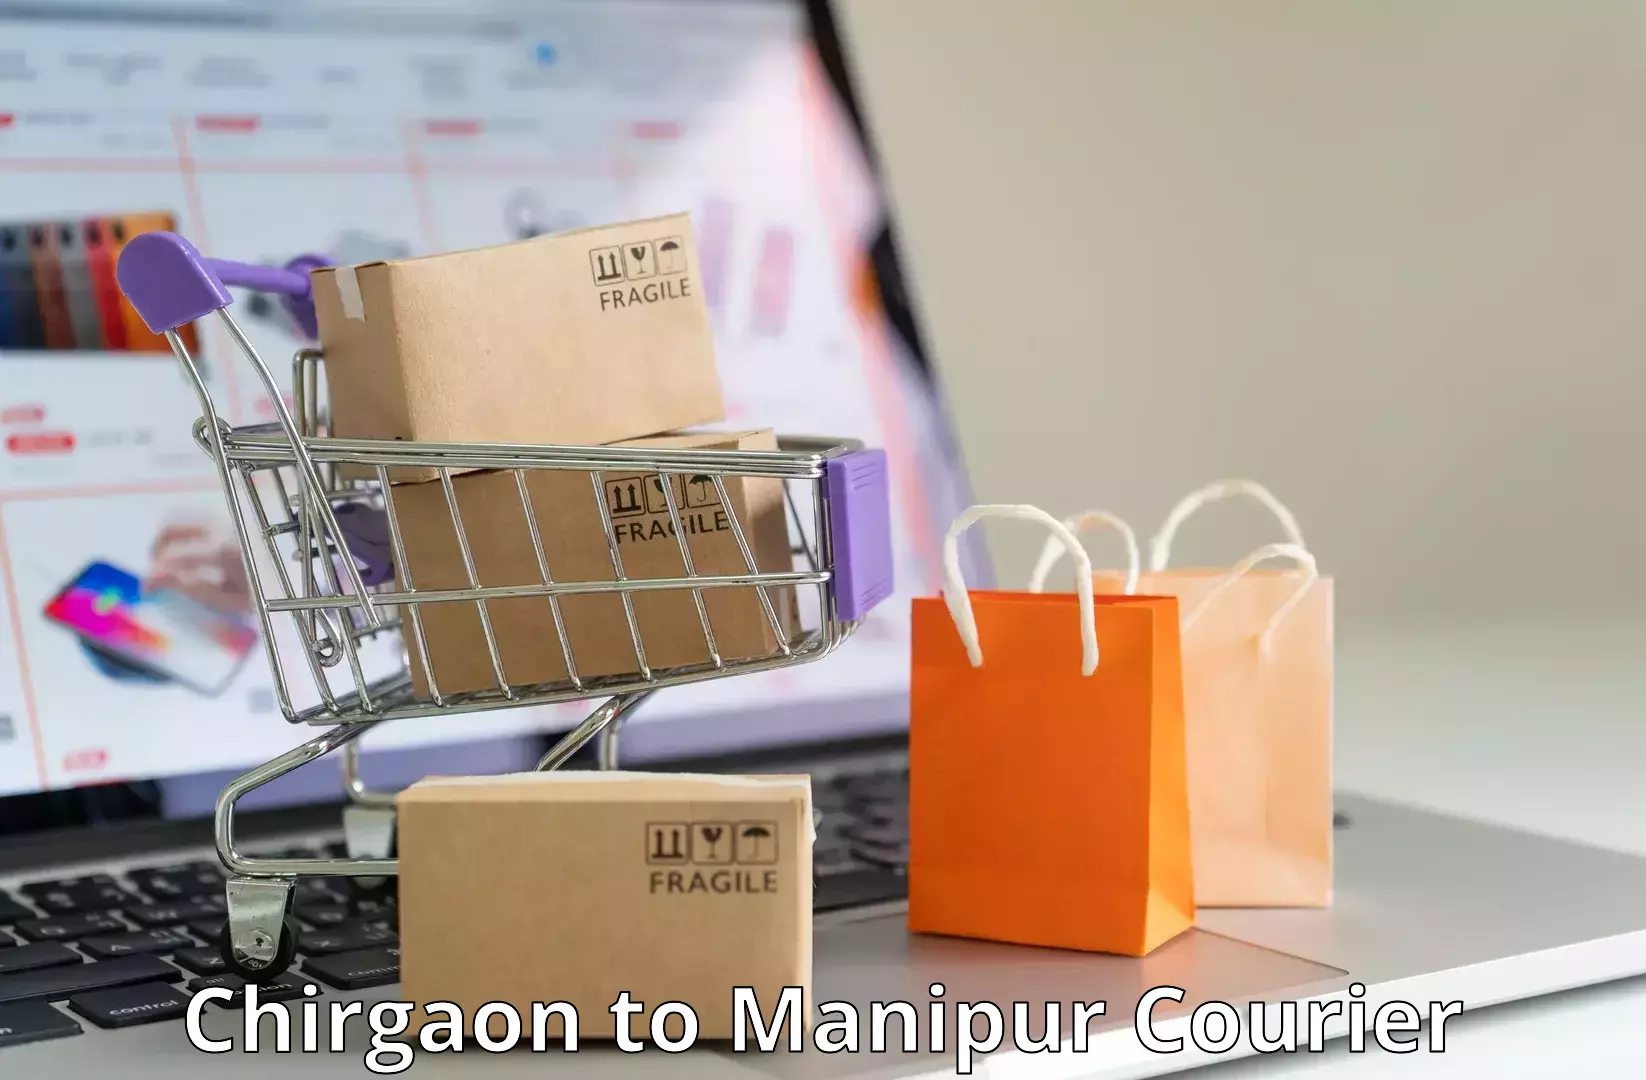 Customer-centric shipping in Chirgaon to Kaptipada